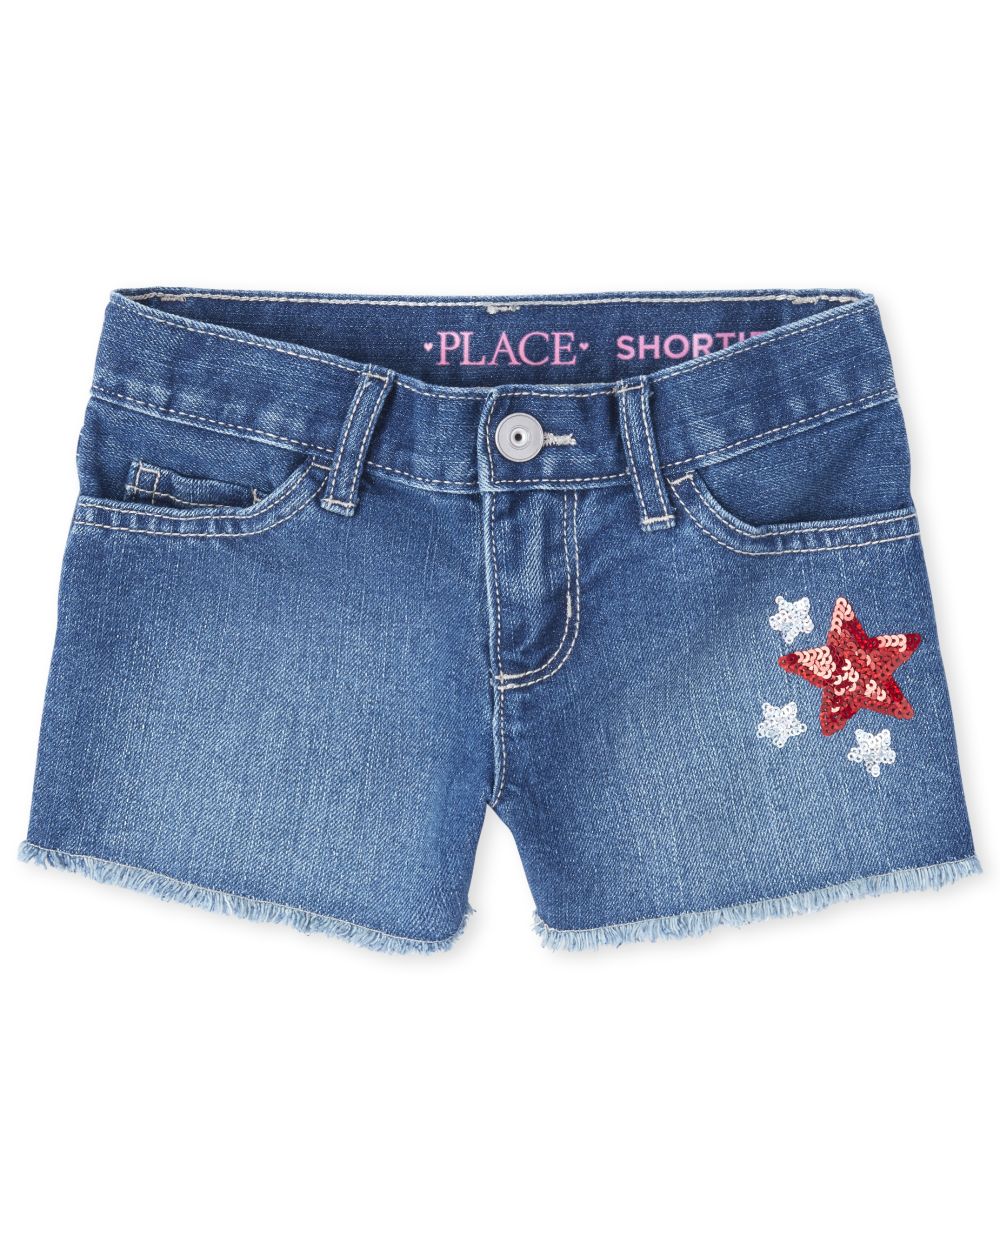 Girls Americana Embroidered Glitter Star Frayed Hem Denim Shortie Shorts